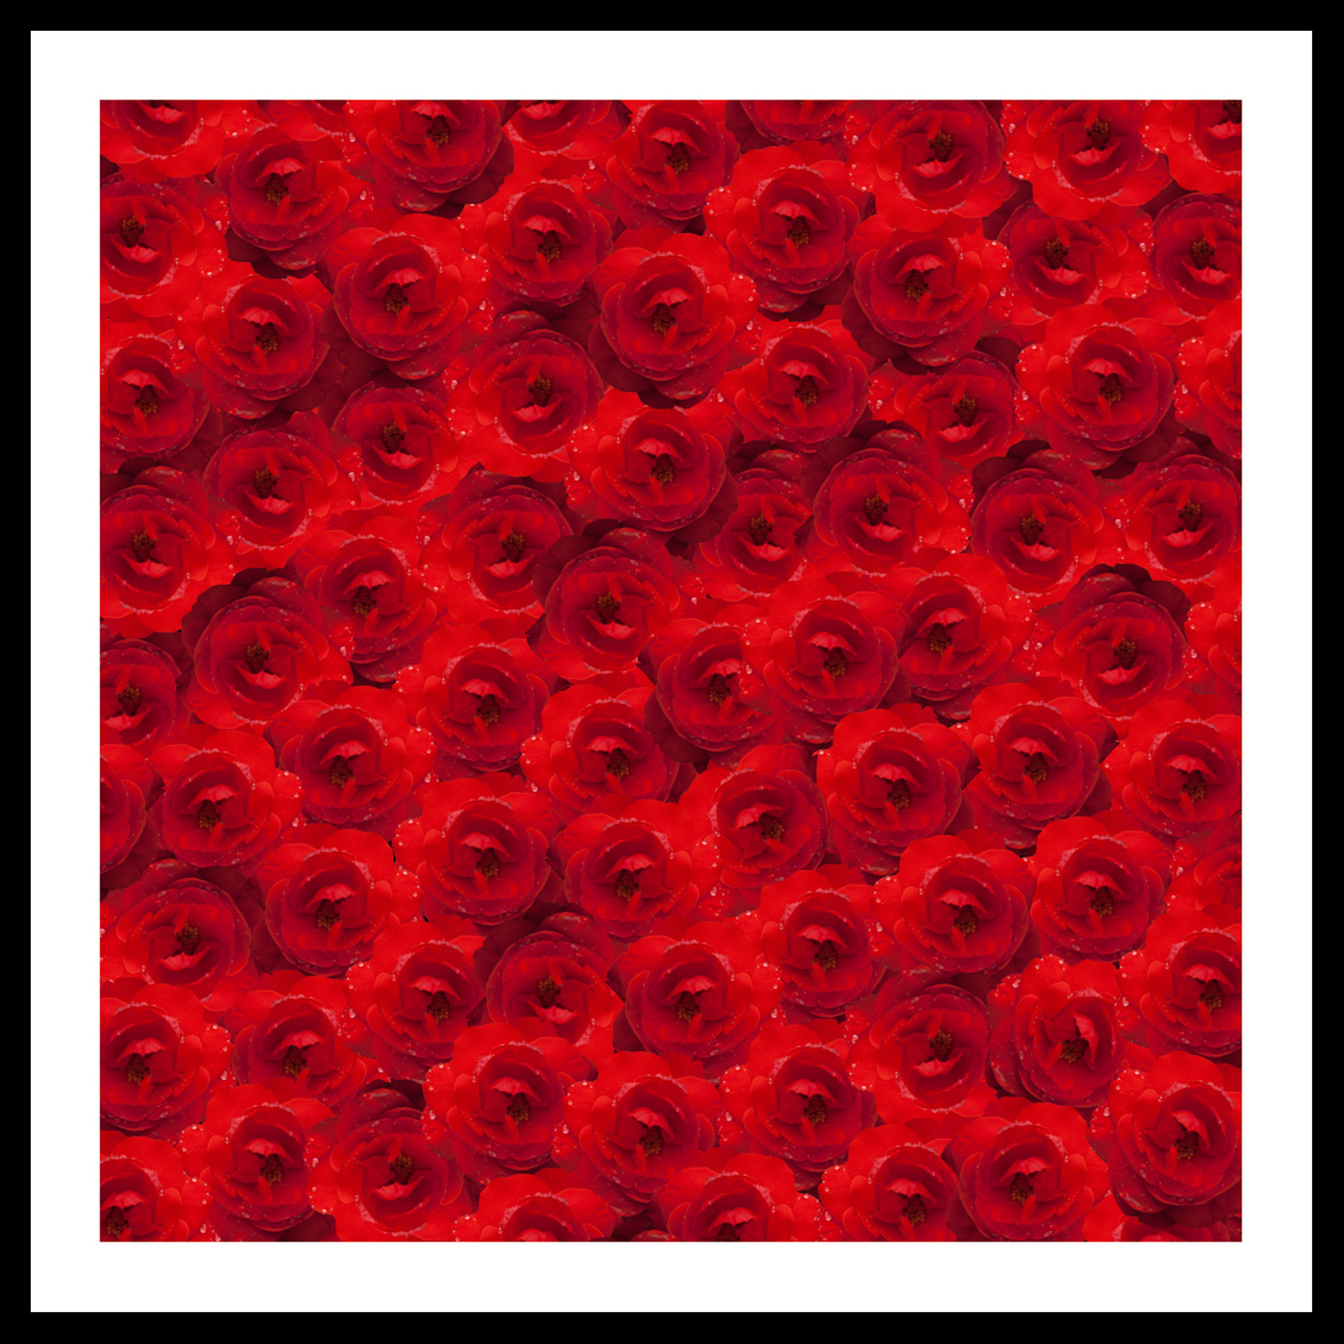 21_Red_Roses-Edit